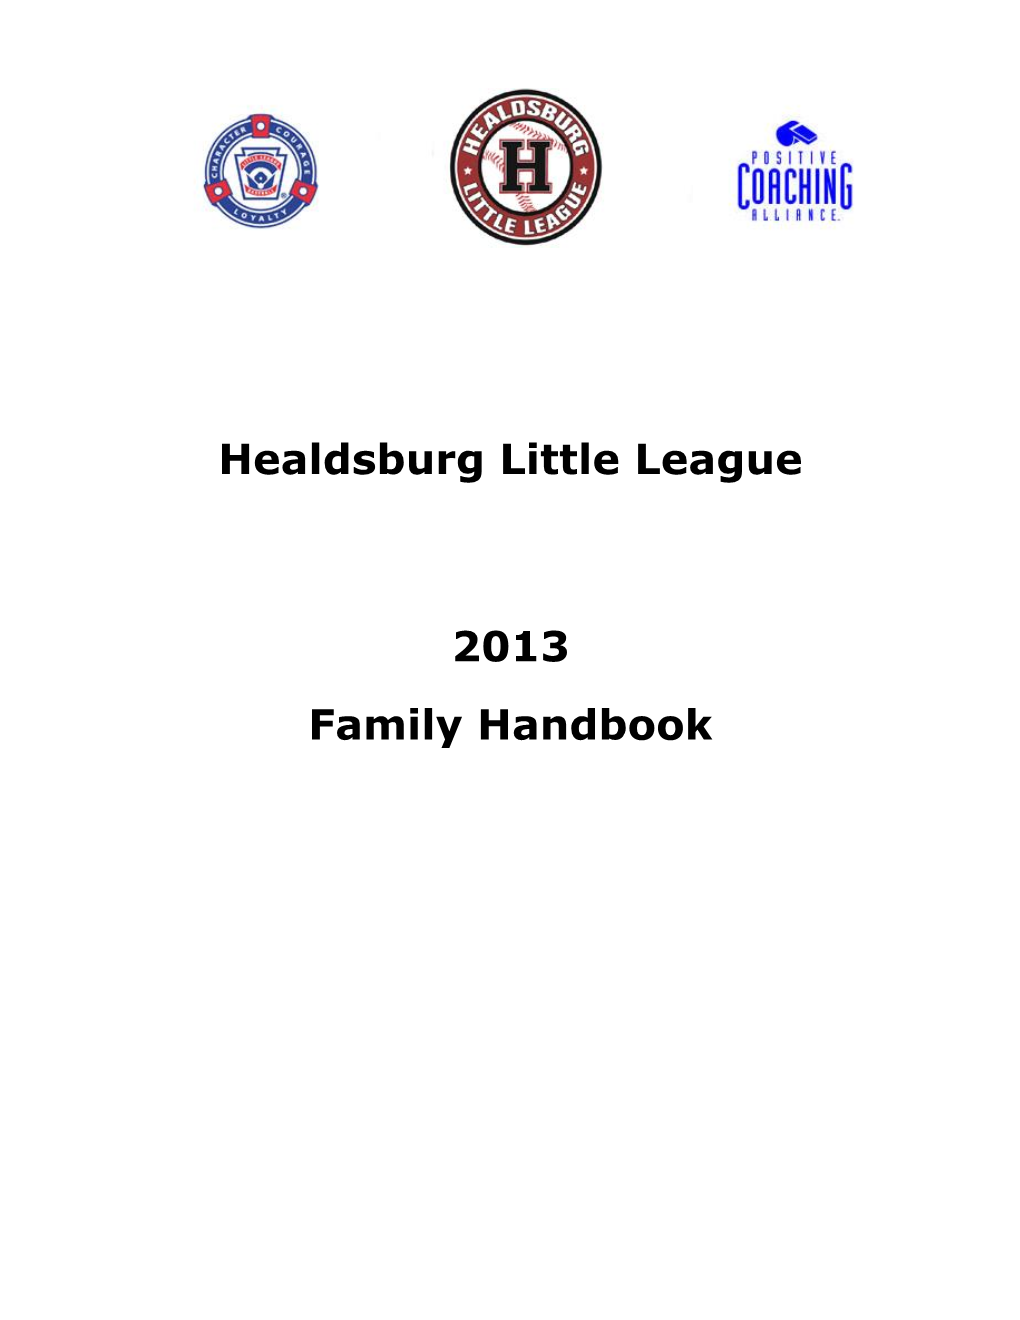 Healdsburg Little League 2013 Family Handbook